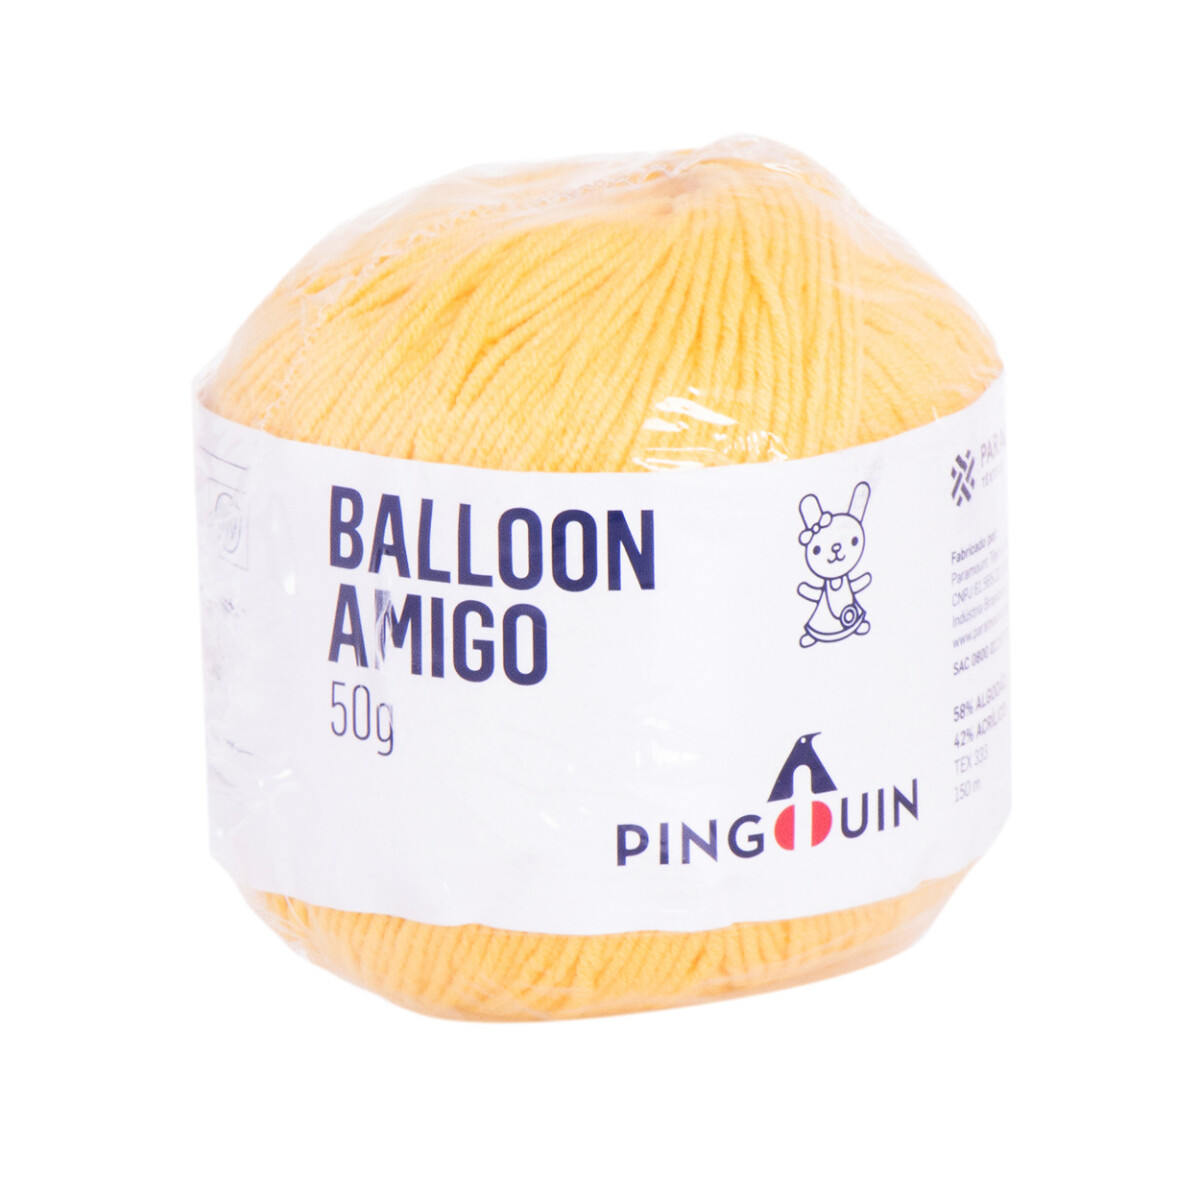 balloon amigo - gameleira 